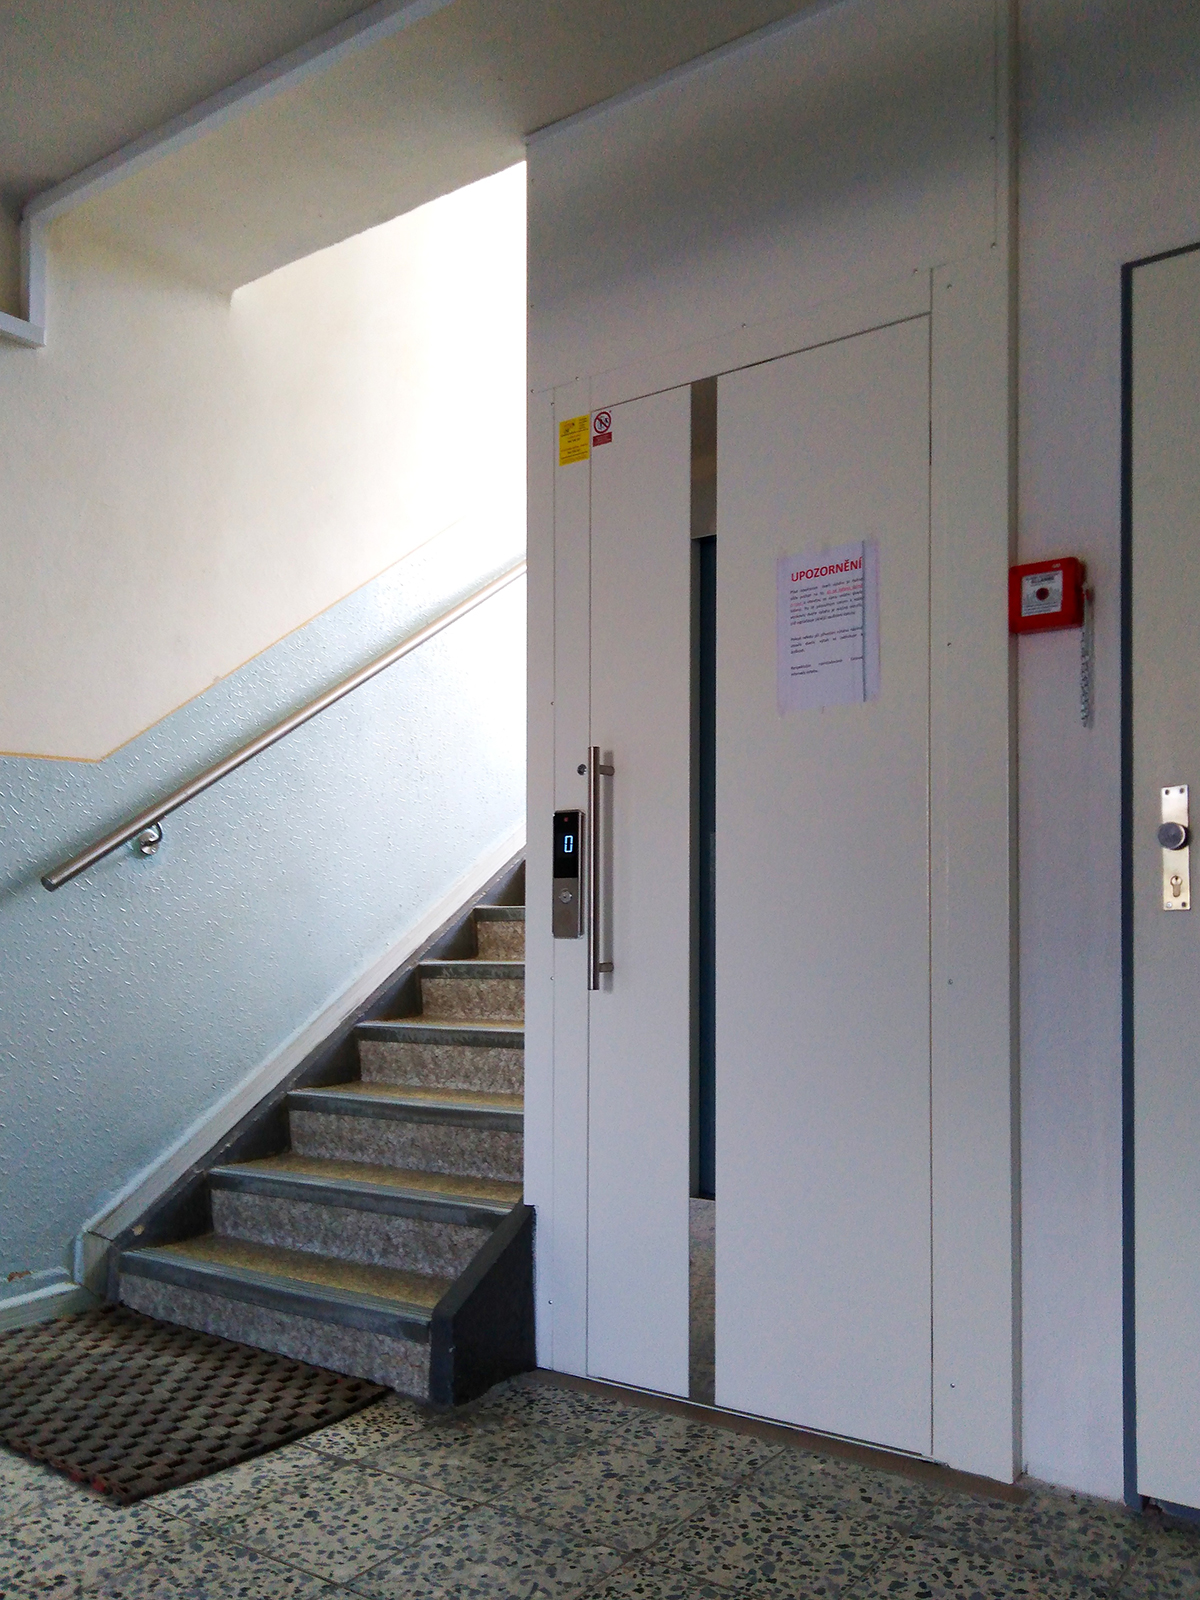 Hydraulický výtah v zrcadle schodiště LC HydroSpace LiftComponents 3 kopie 1